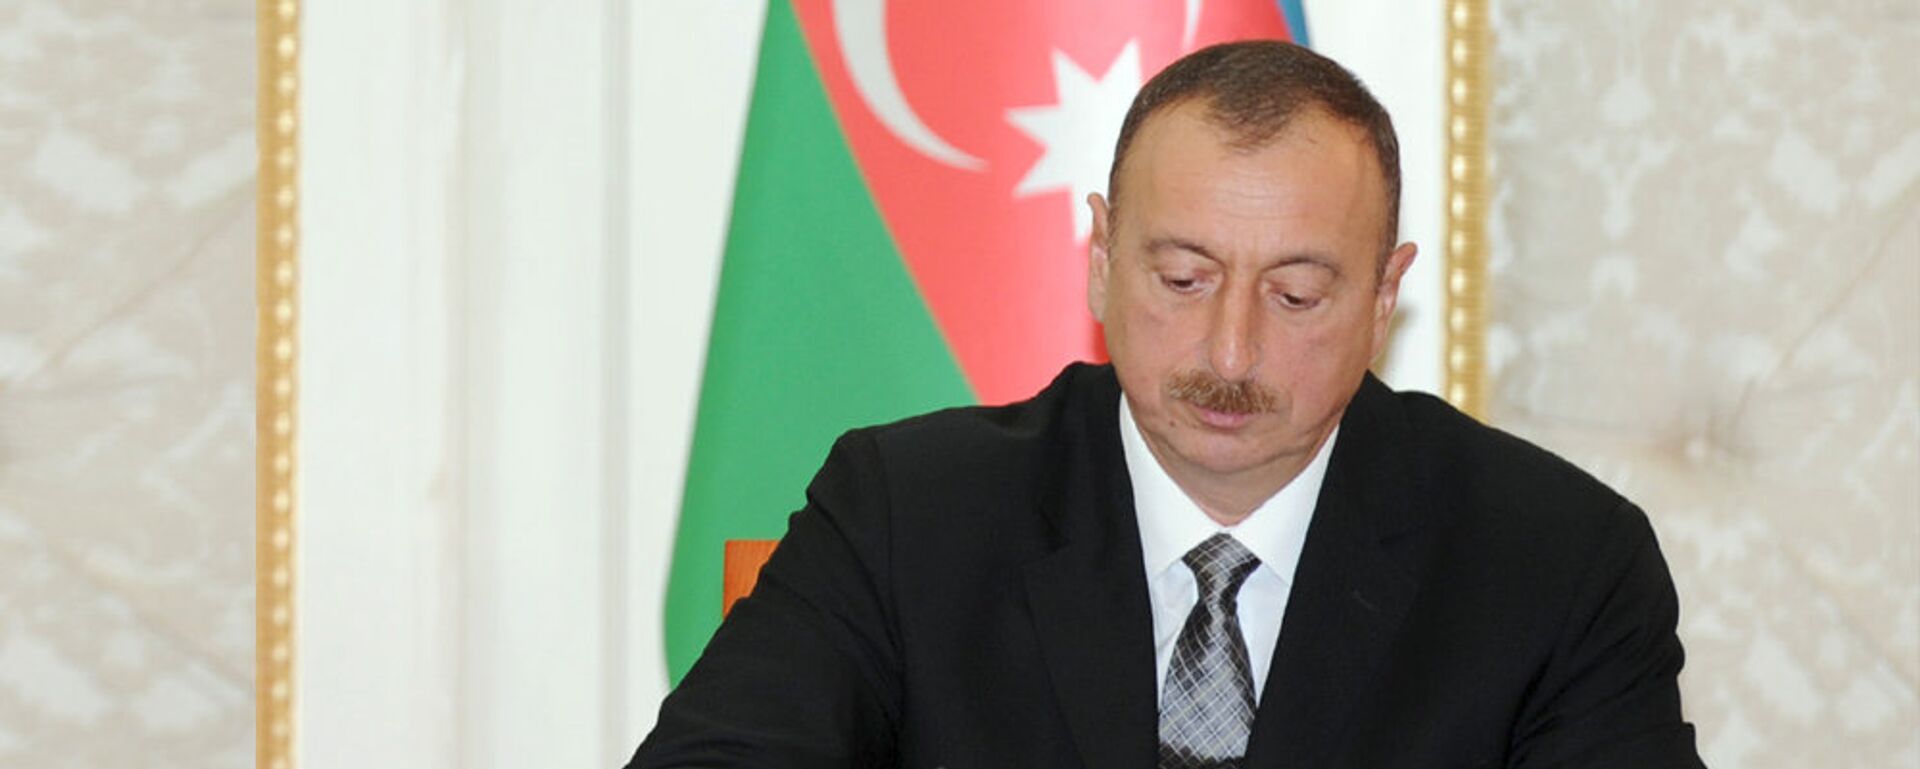 Президент Азербайджана Ильхам Алиев - Sputnik Азербайджан, 1920, 25.02.2021